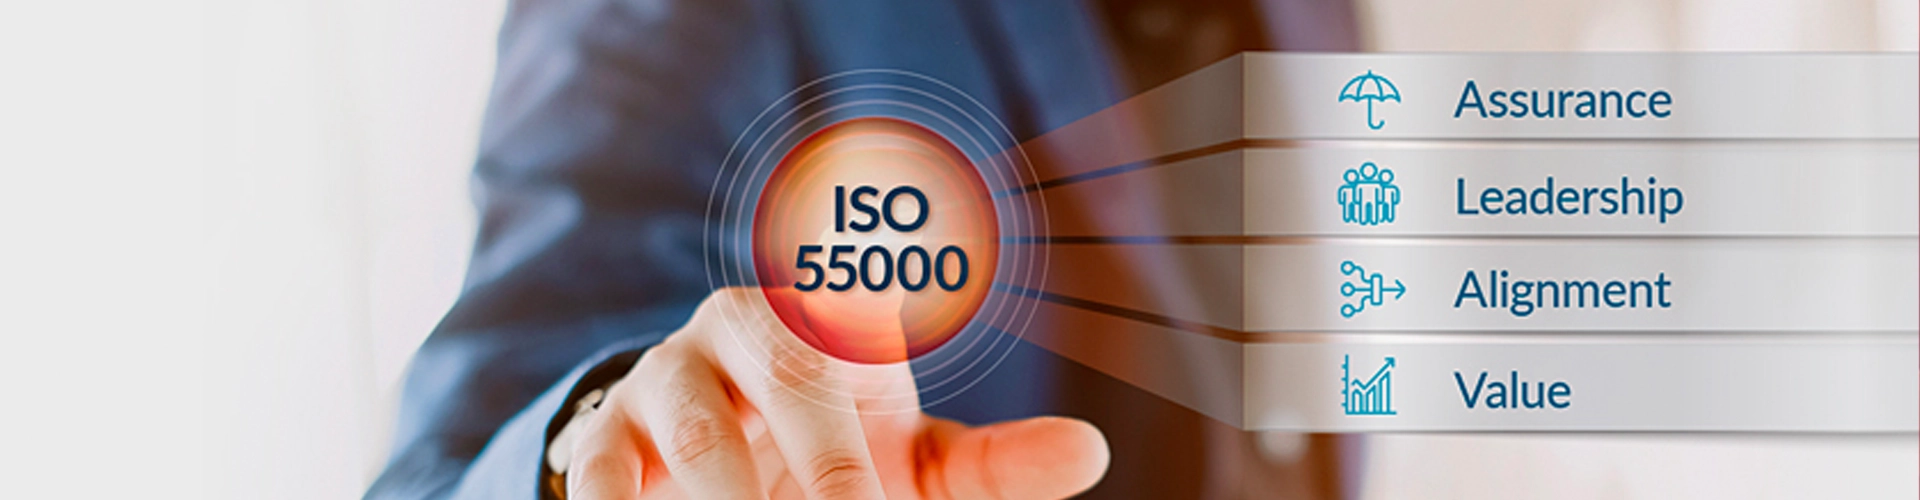 Blog Hero ISO 55000 - Copperleaf Decision Analytics